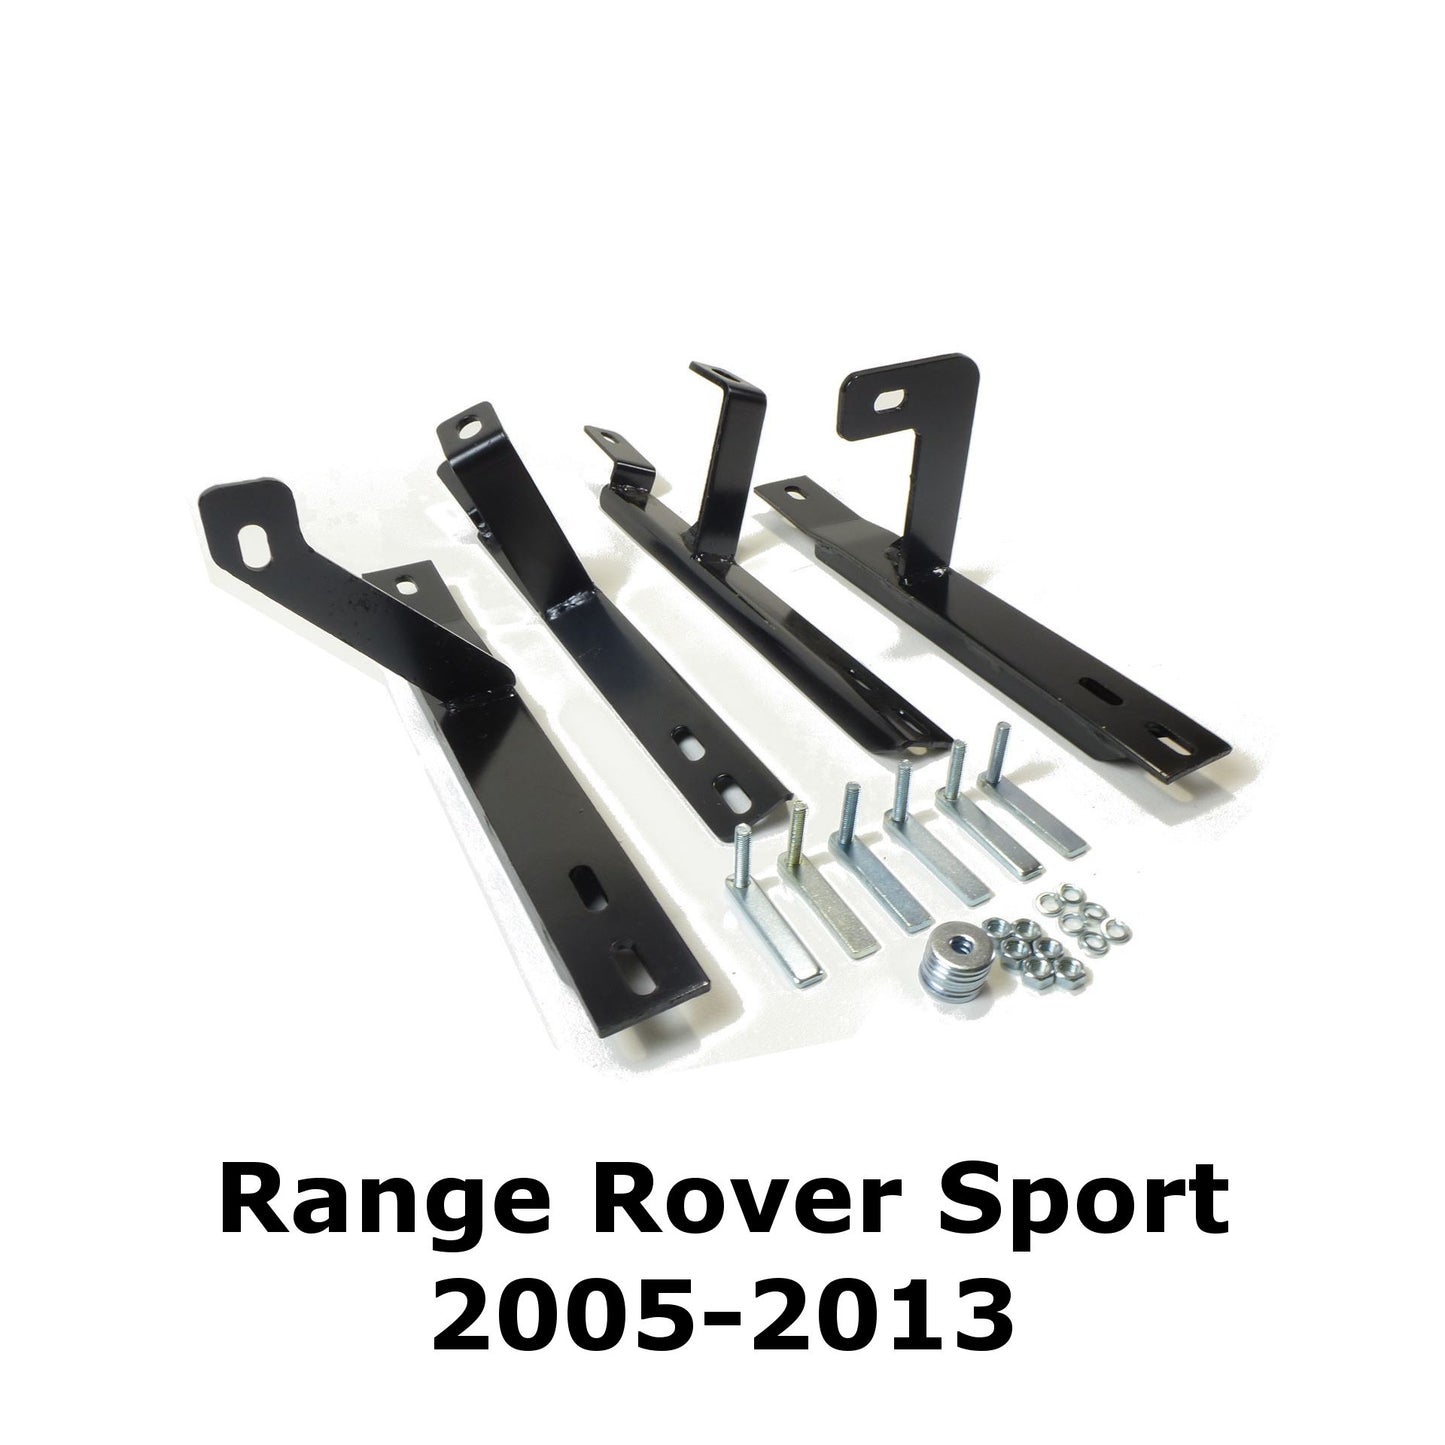 Black Raptor Side Steps Running Boards for Range Rover Sport 2005-2013 (L320) -  - sold by Direct4x4